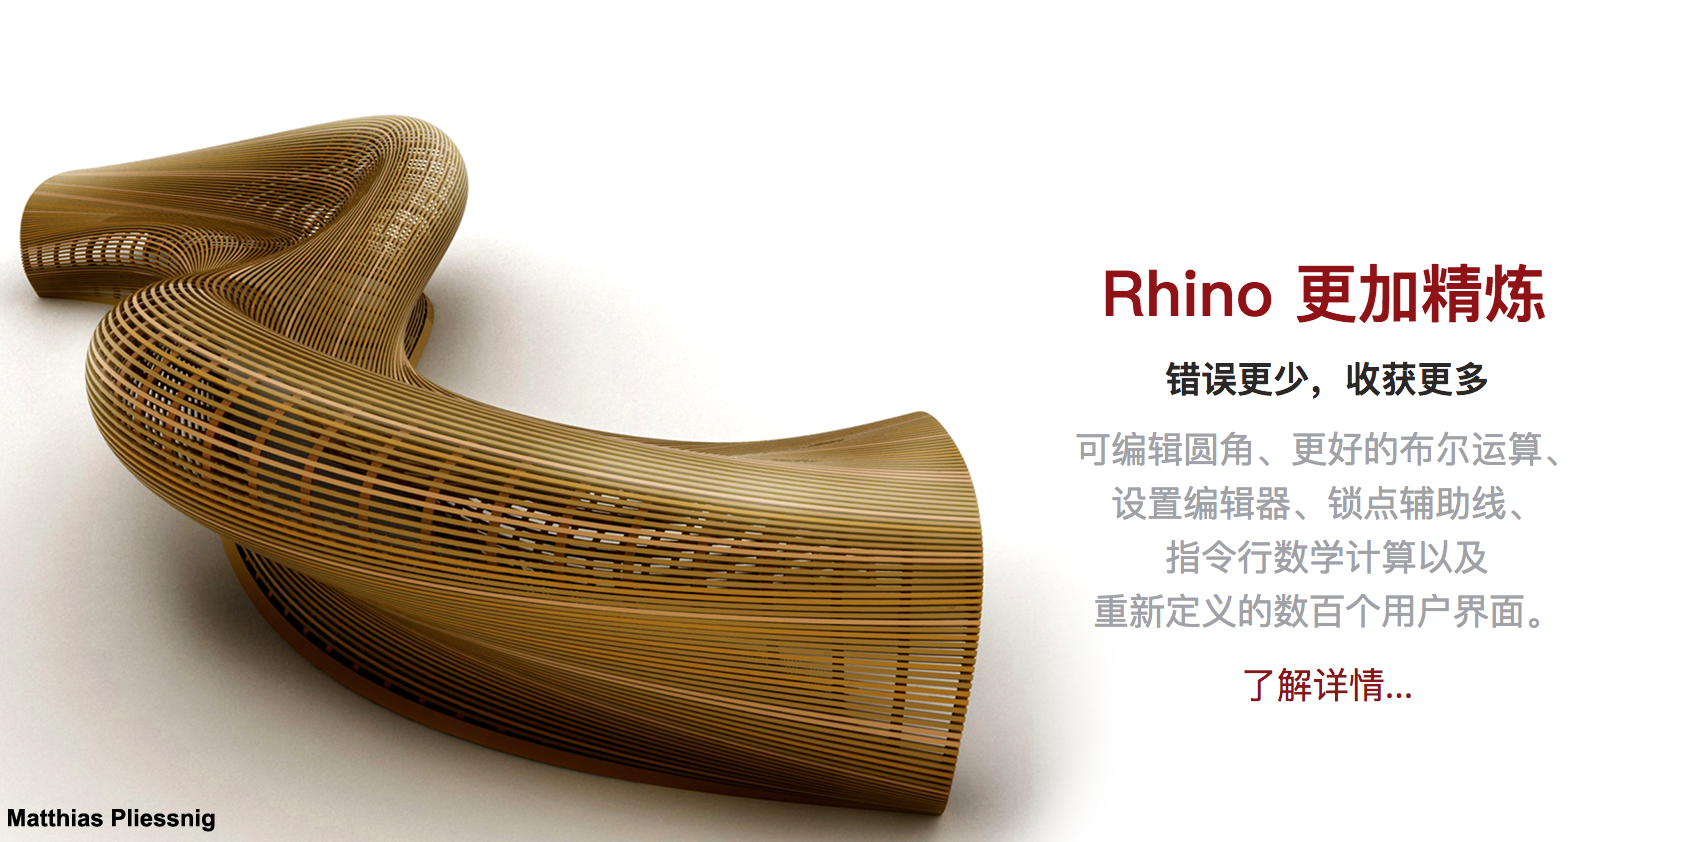 Rhinoceros 3D 7.33.23248.13001 for mac instal free